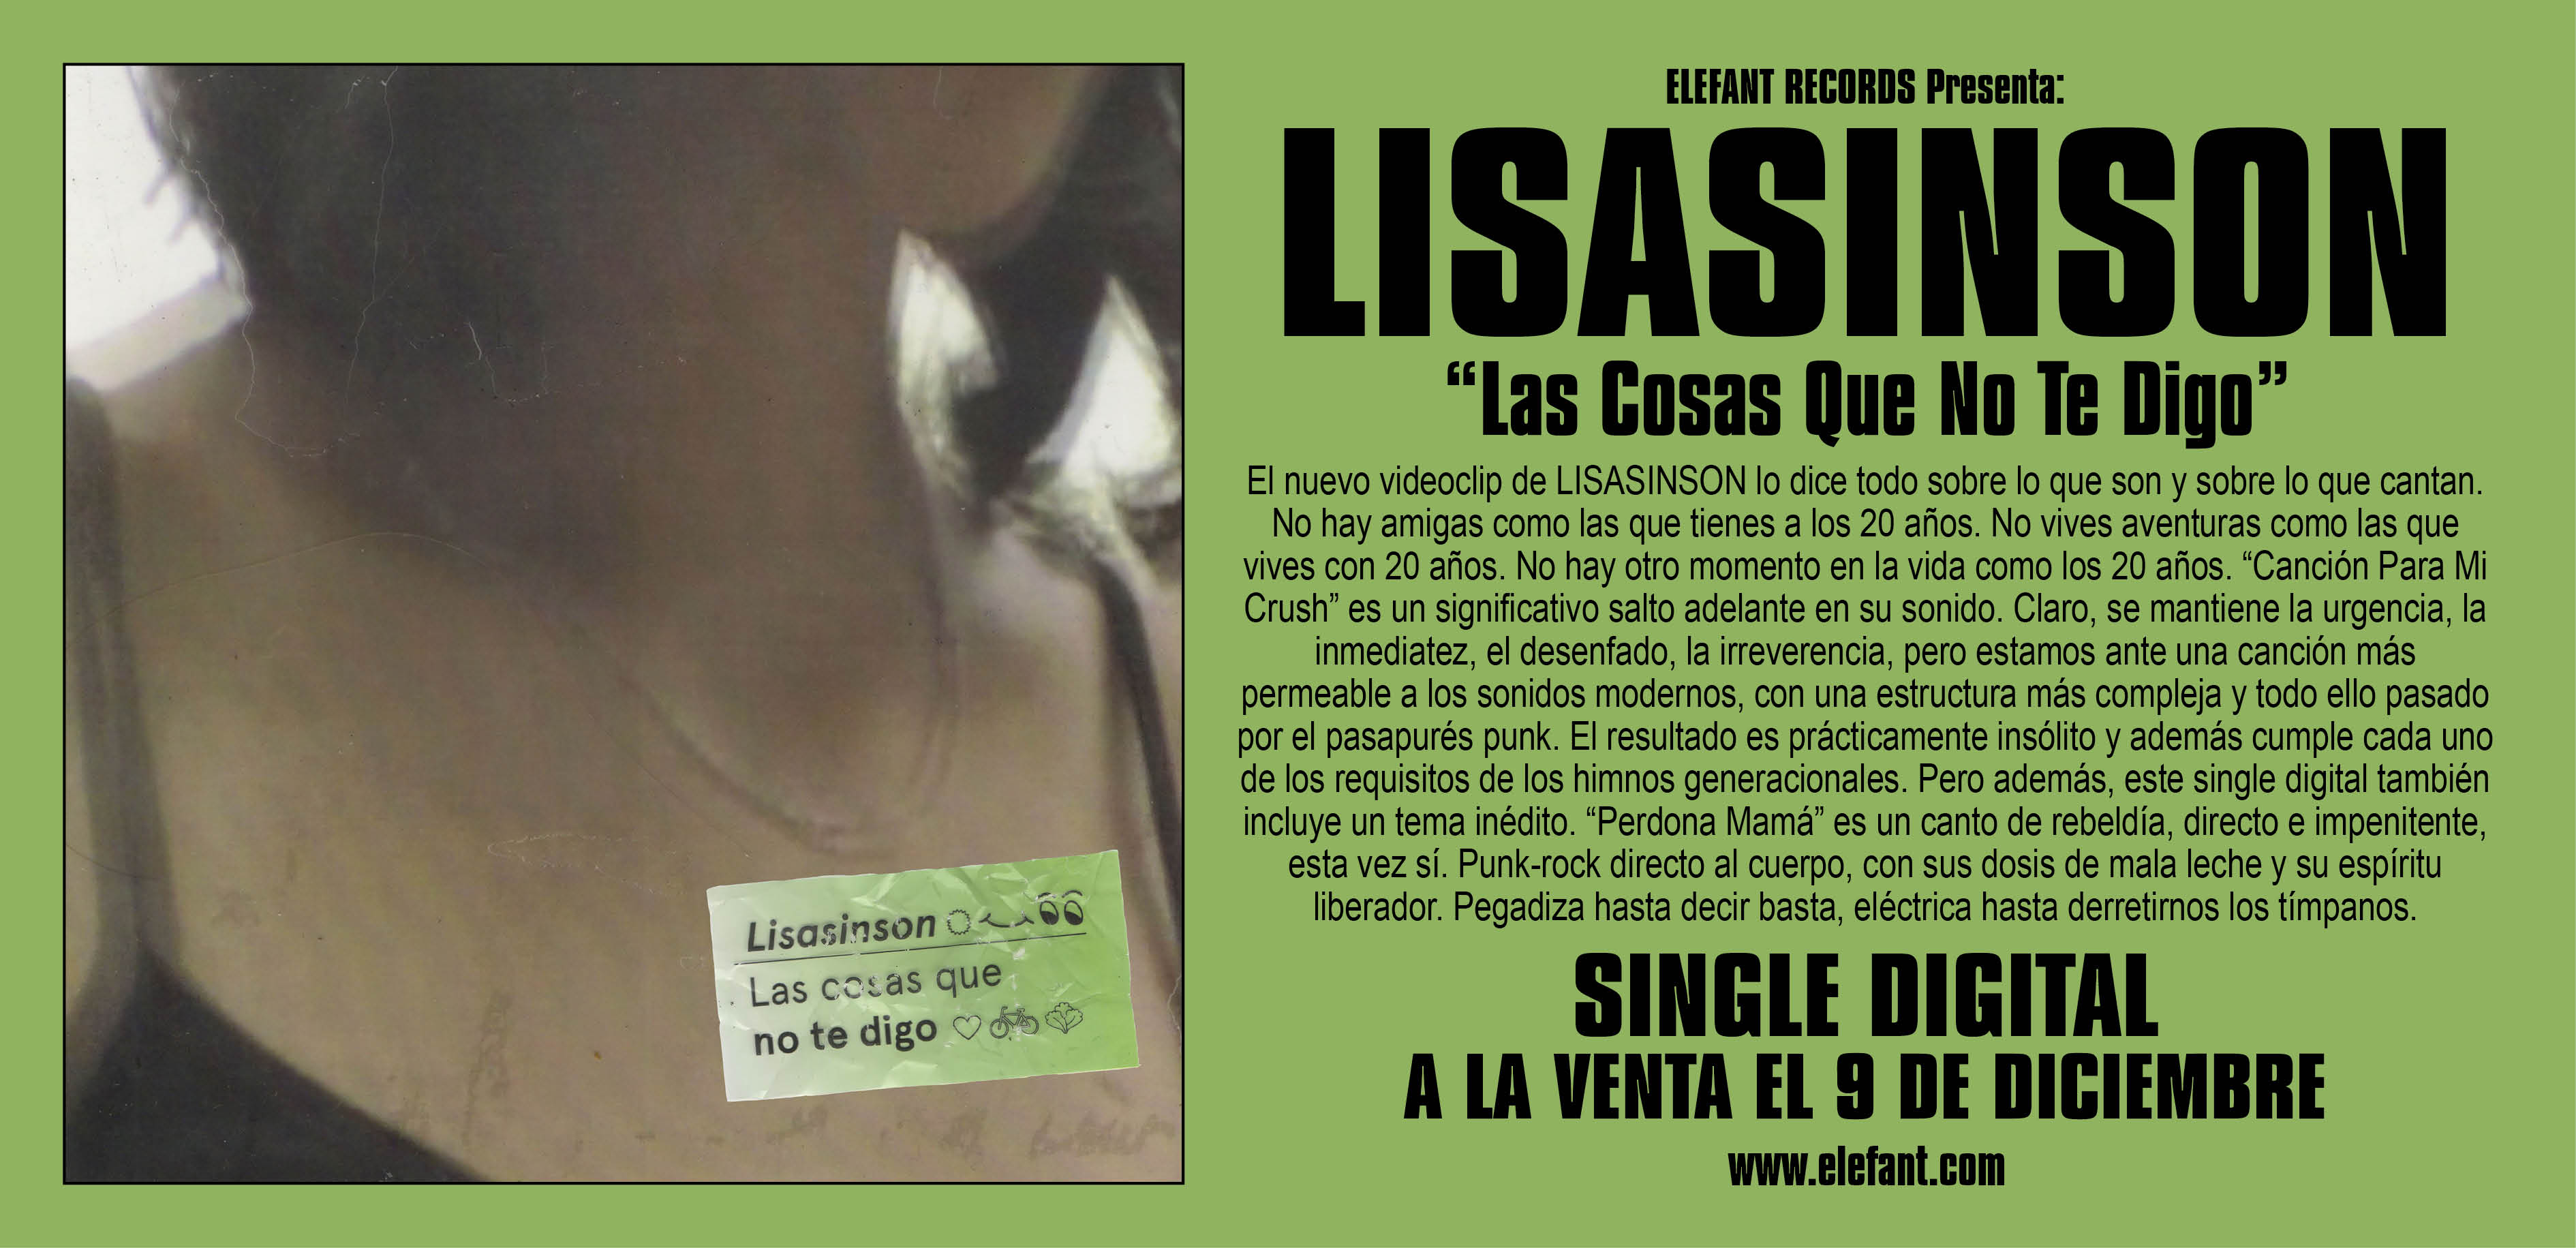 Lisasinson "Las Cosas Que No Te Digo" Digital Single